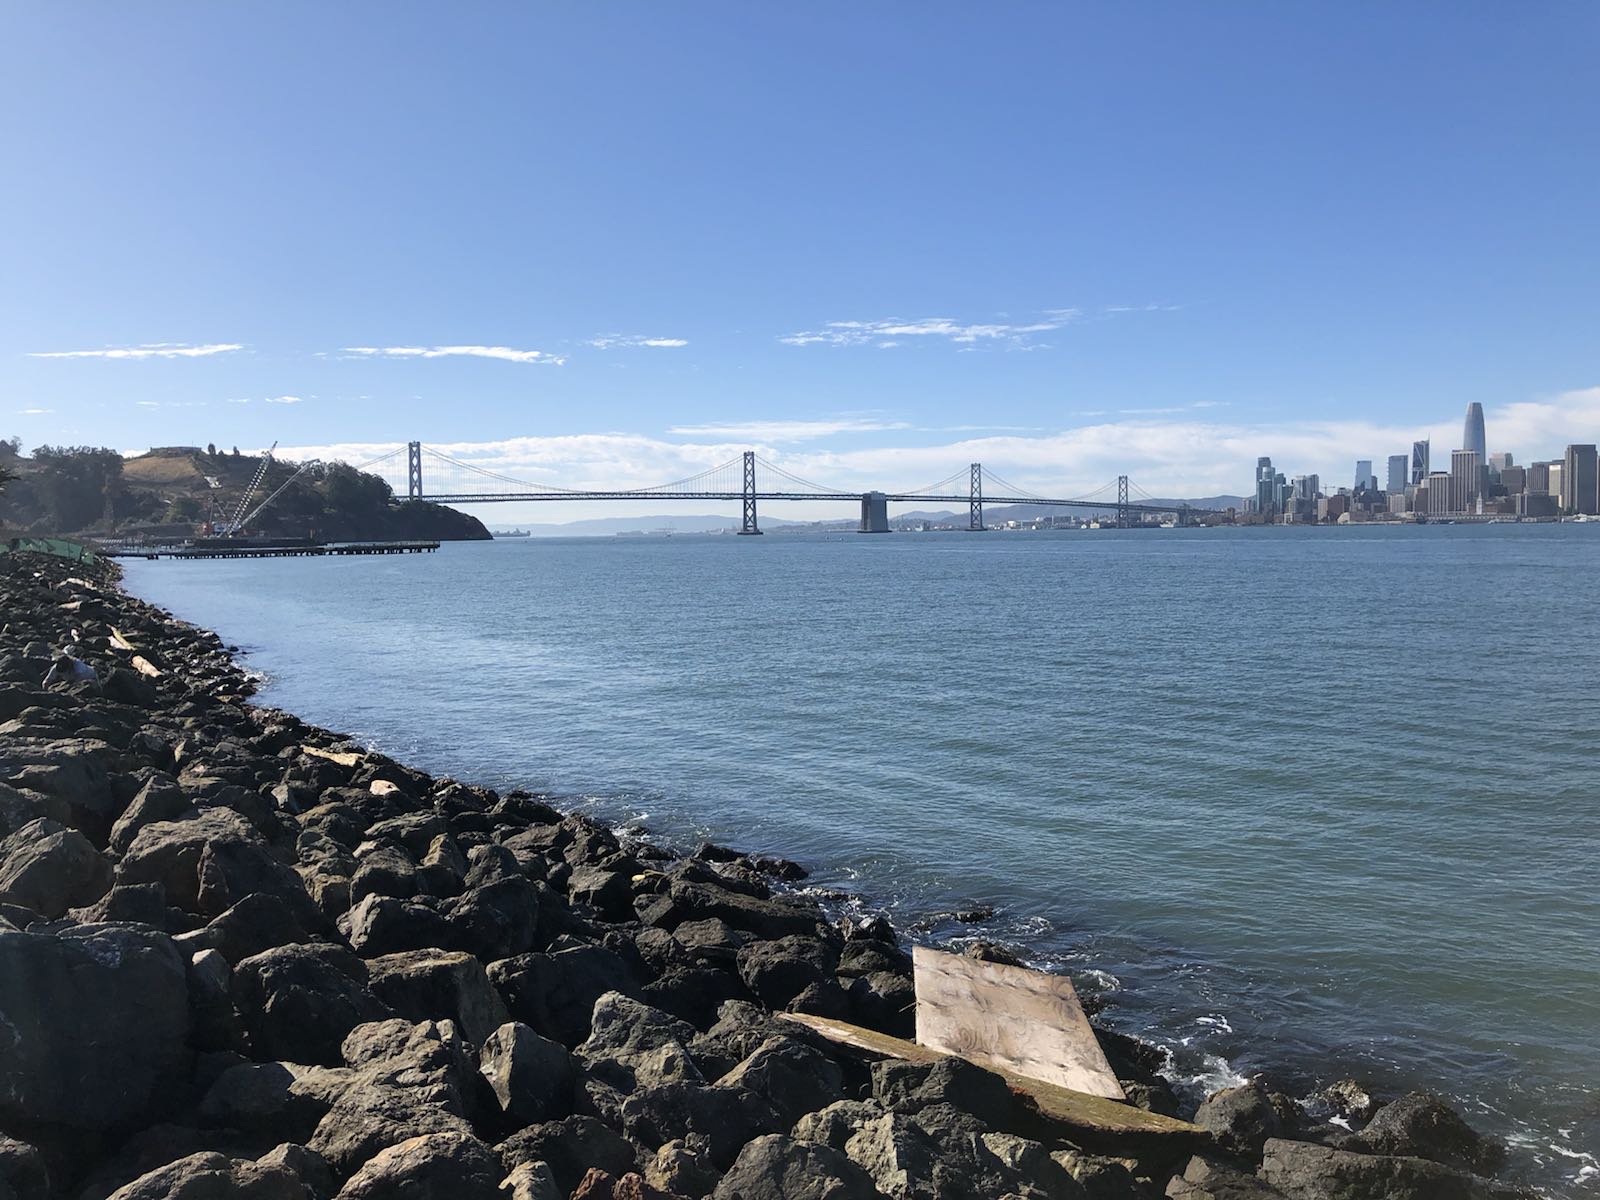 介在湾区大桥中间的一座岛屿，在这个岛屿的北侧能将旧金山城区的样貌一览无